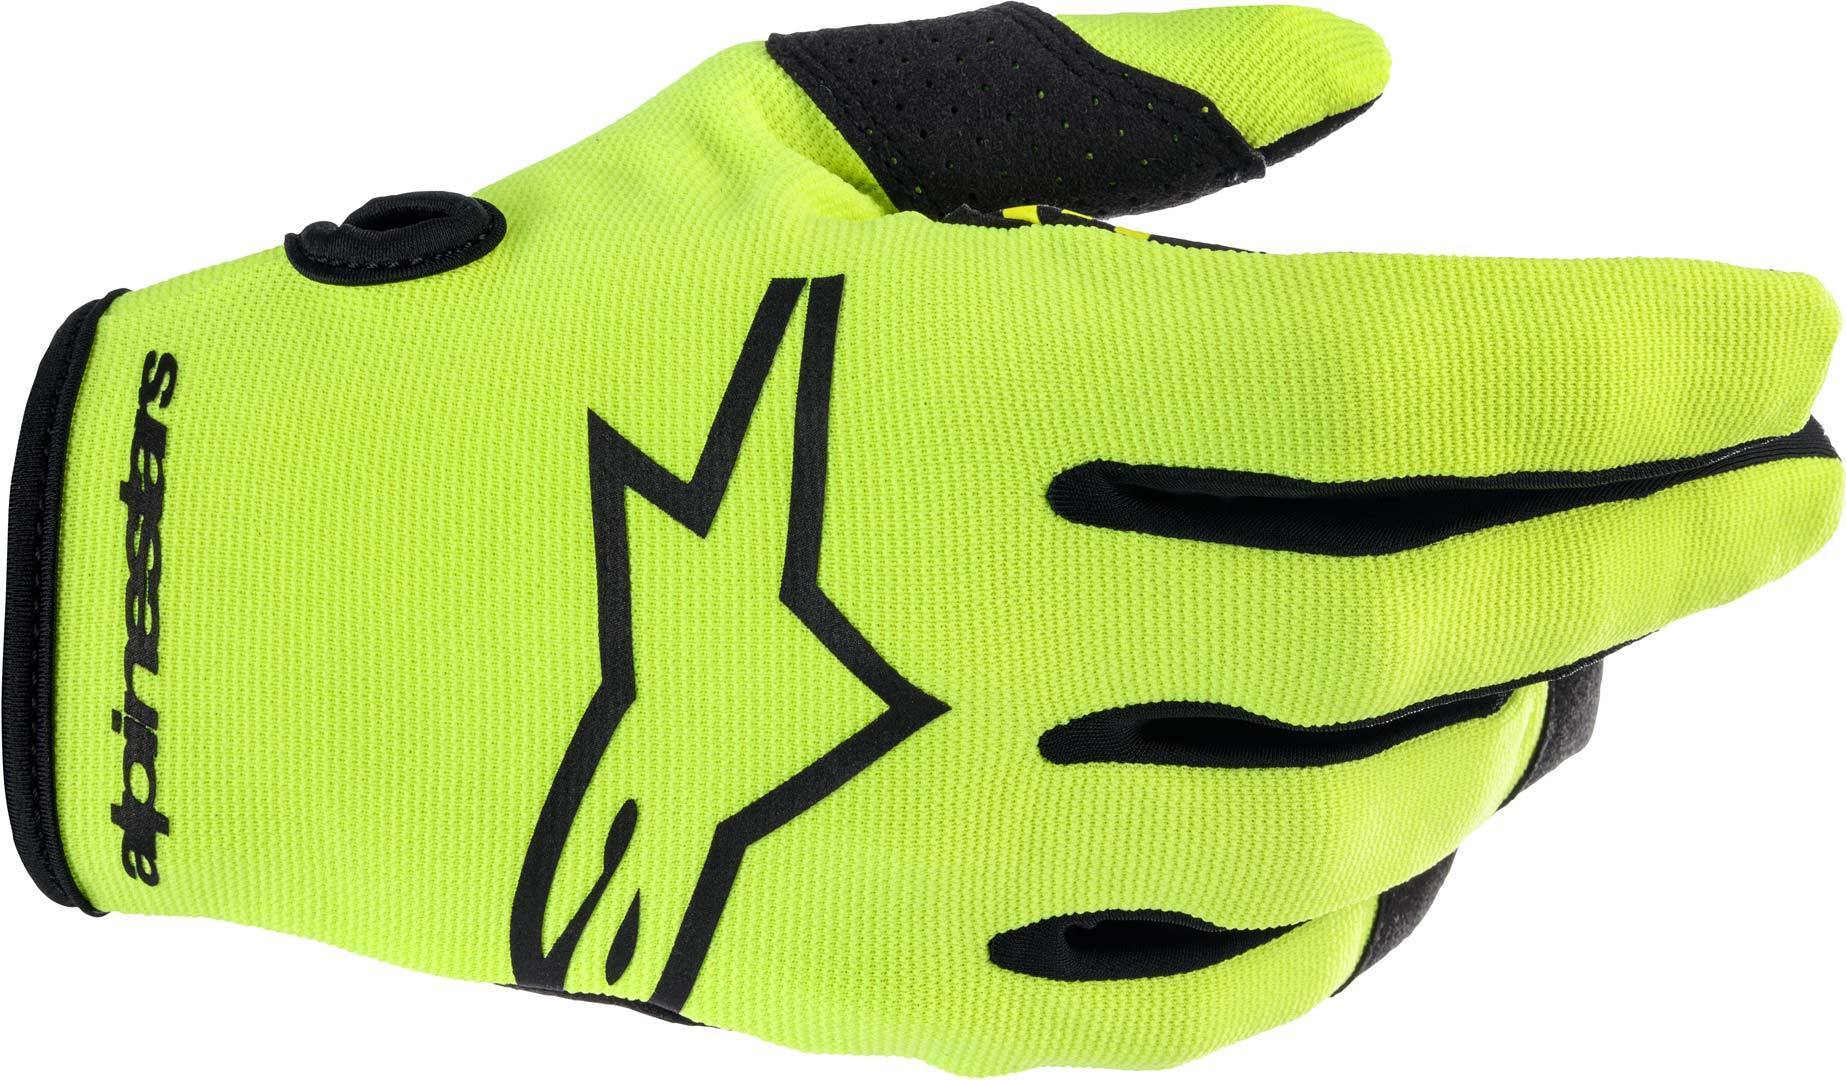 Детские перчатки для мотокросса Alpinestars Radar, желтый перчатки вратарские adidas детские x gl lge j желтый